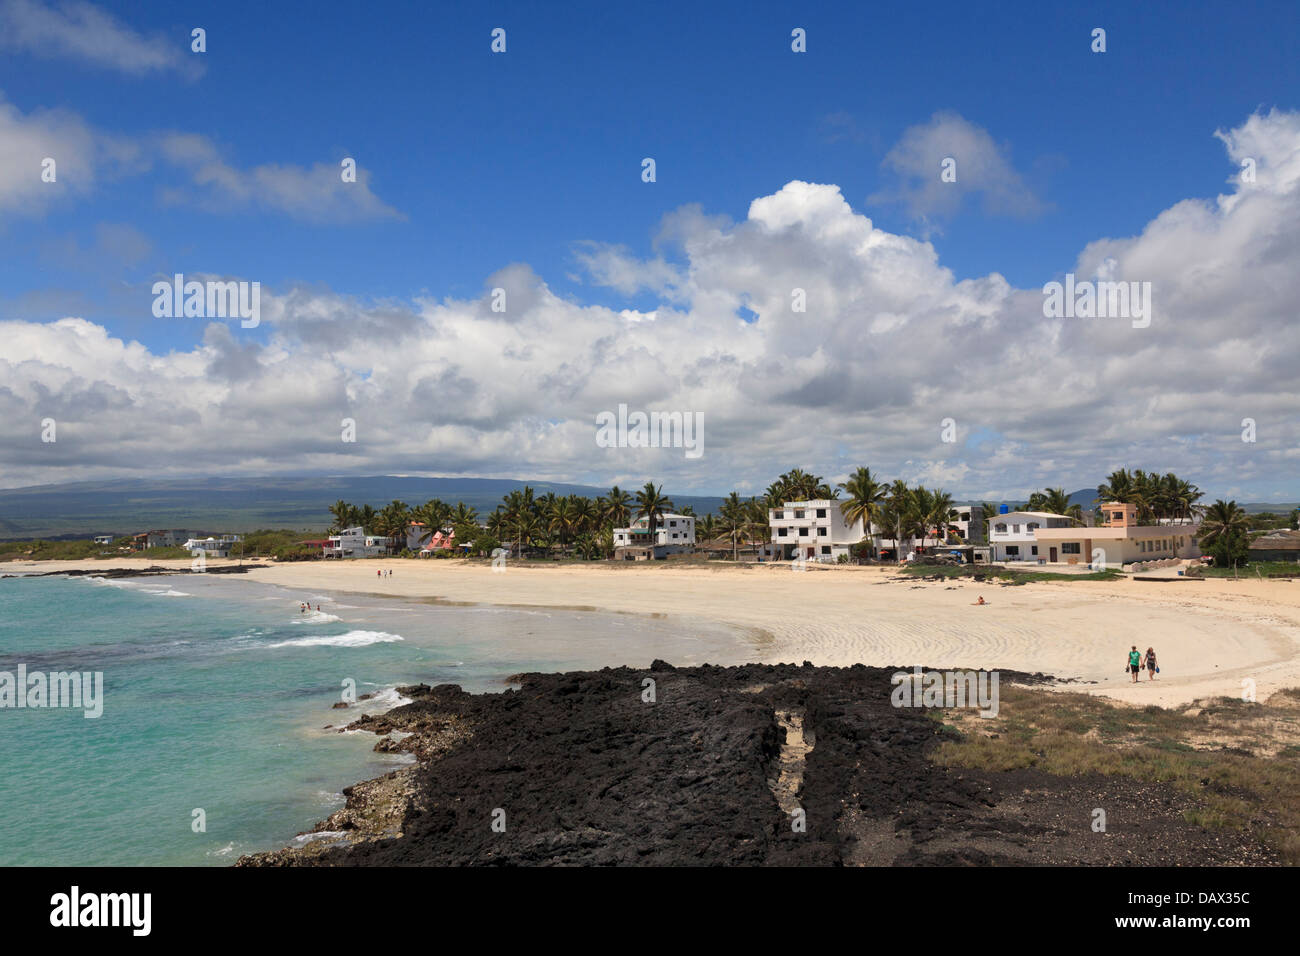 Beach, Puerto Villamil, Isabela Island, Galapagos Islands, Ecuador Stock Photo